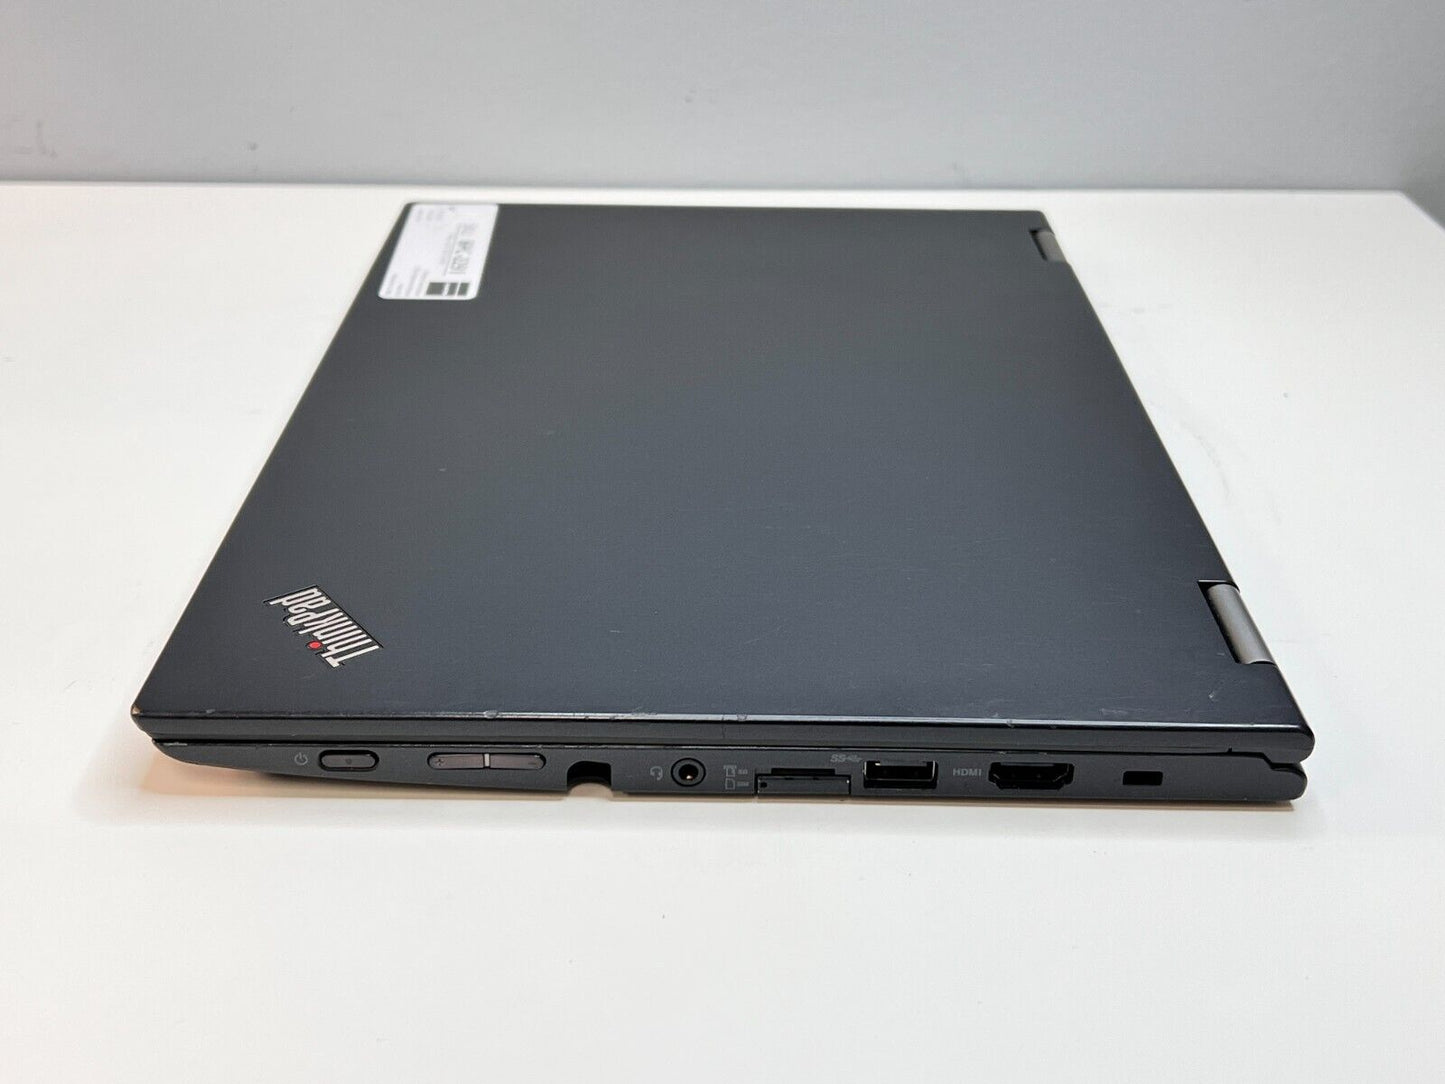 2in1 Lenovo Yoga X260 (i5-6200U, 8GB, 192GB NVMe M.2 SSD) w/ W10 Pro & 12" Touch